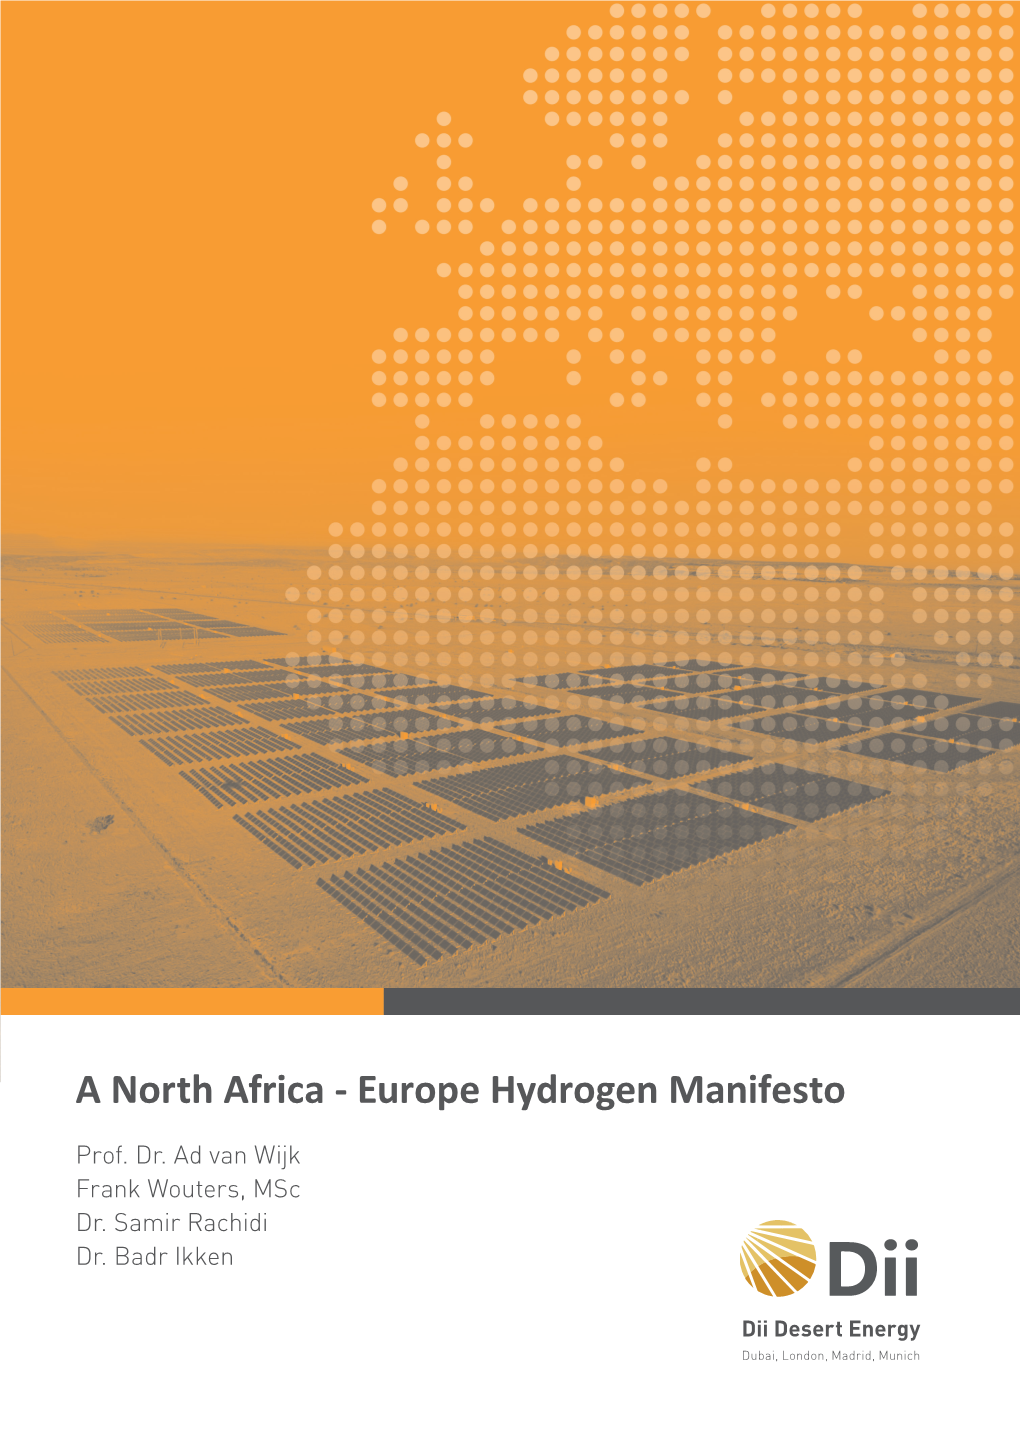 A North Africa - Europe Hydrogen Manifesto